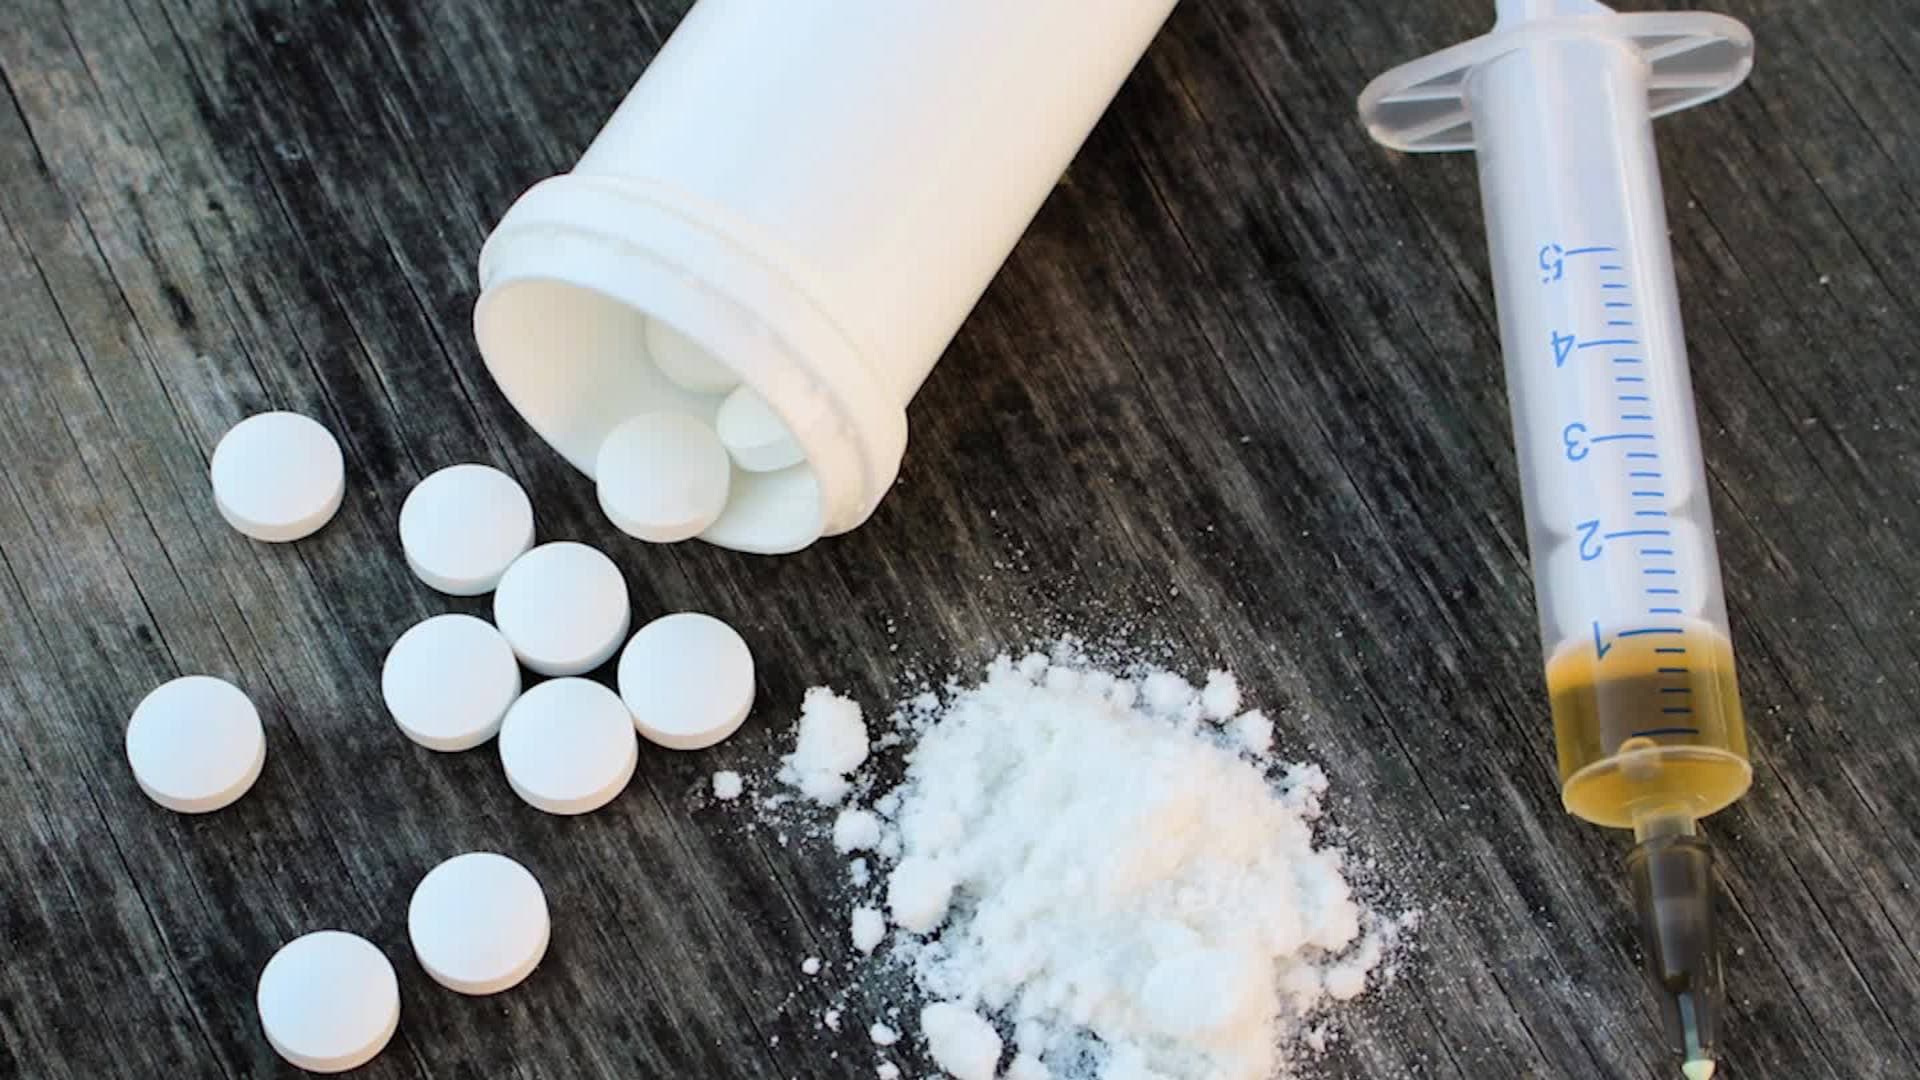 Europa moet zich voorbereiden op groeiend gebruik van fentanyl, drug die 50 keer sterker is dan heroïne